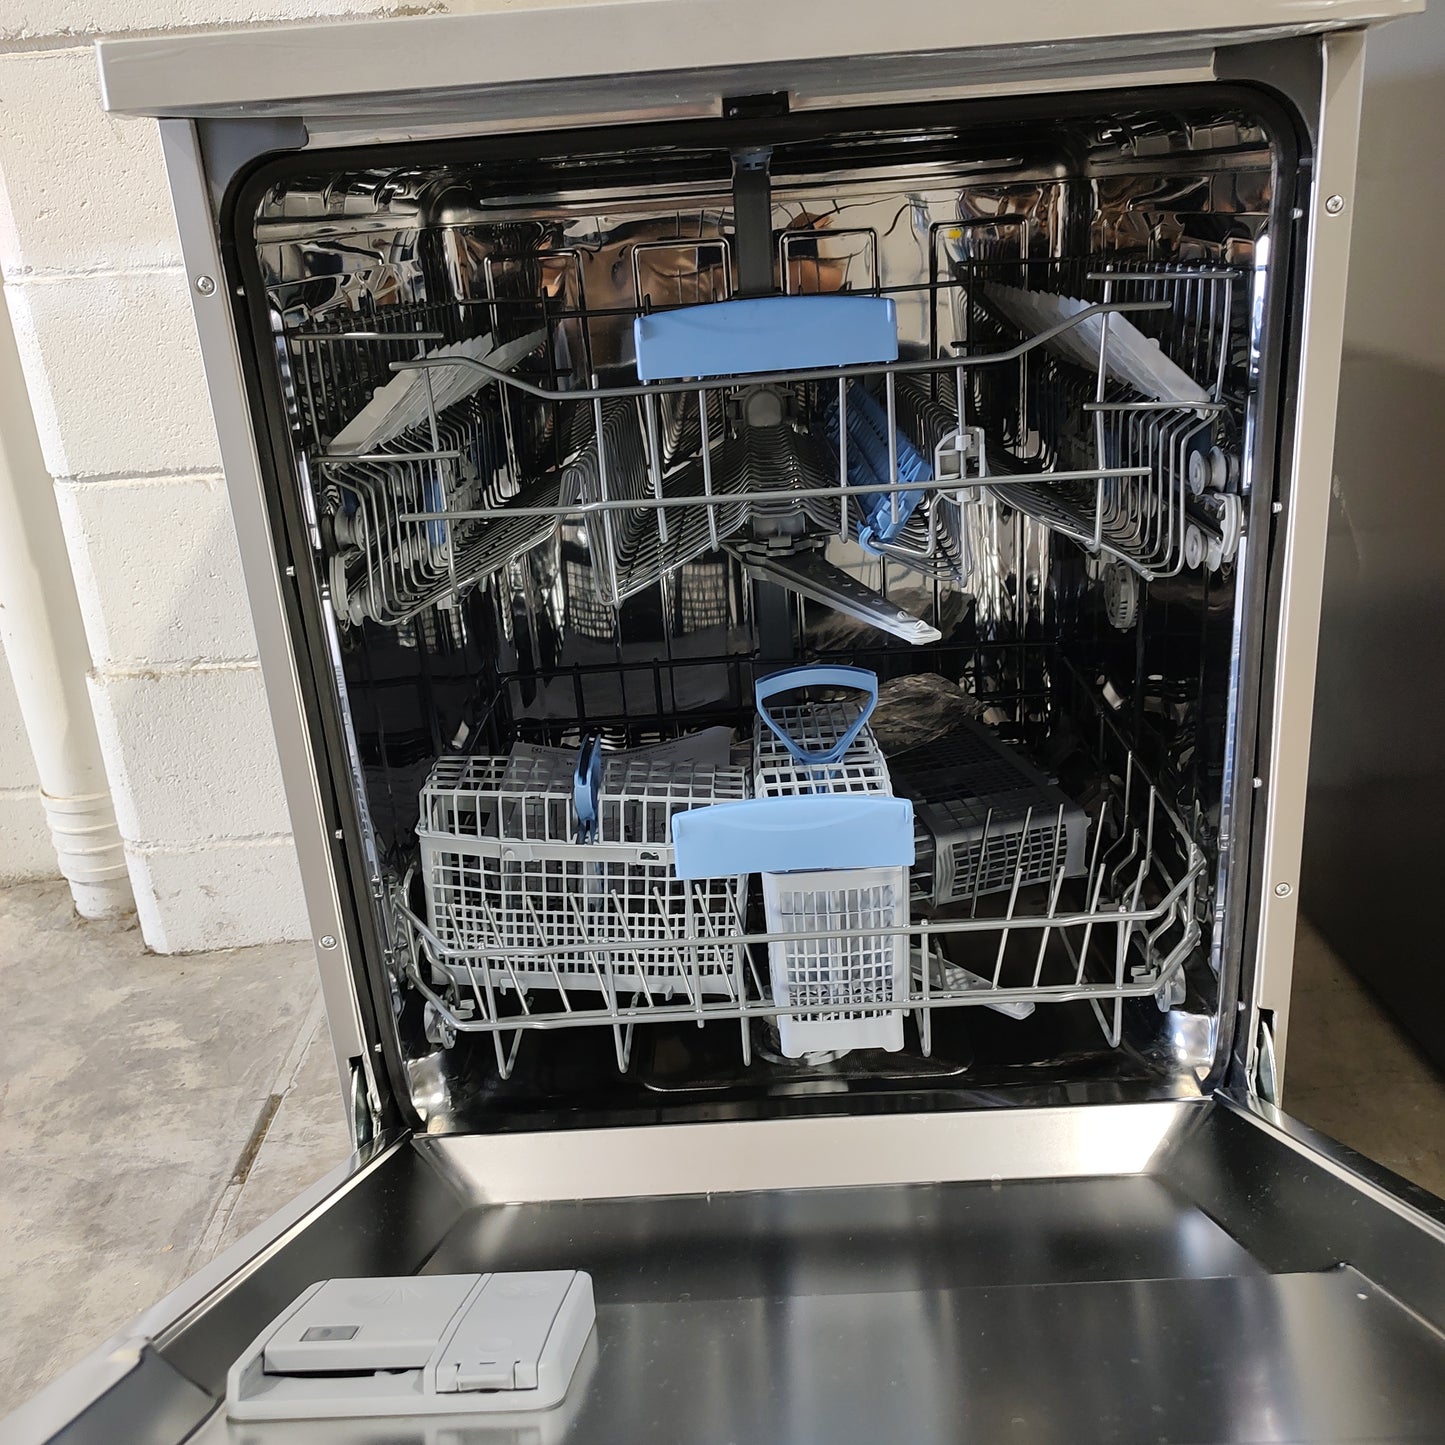 Westinghouse Freestanding Dishwasher WSF6606XA